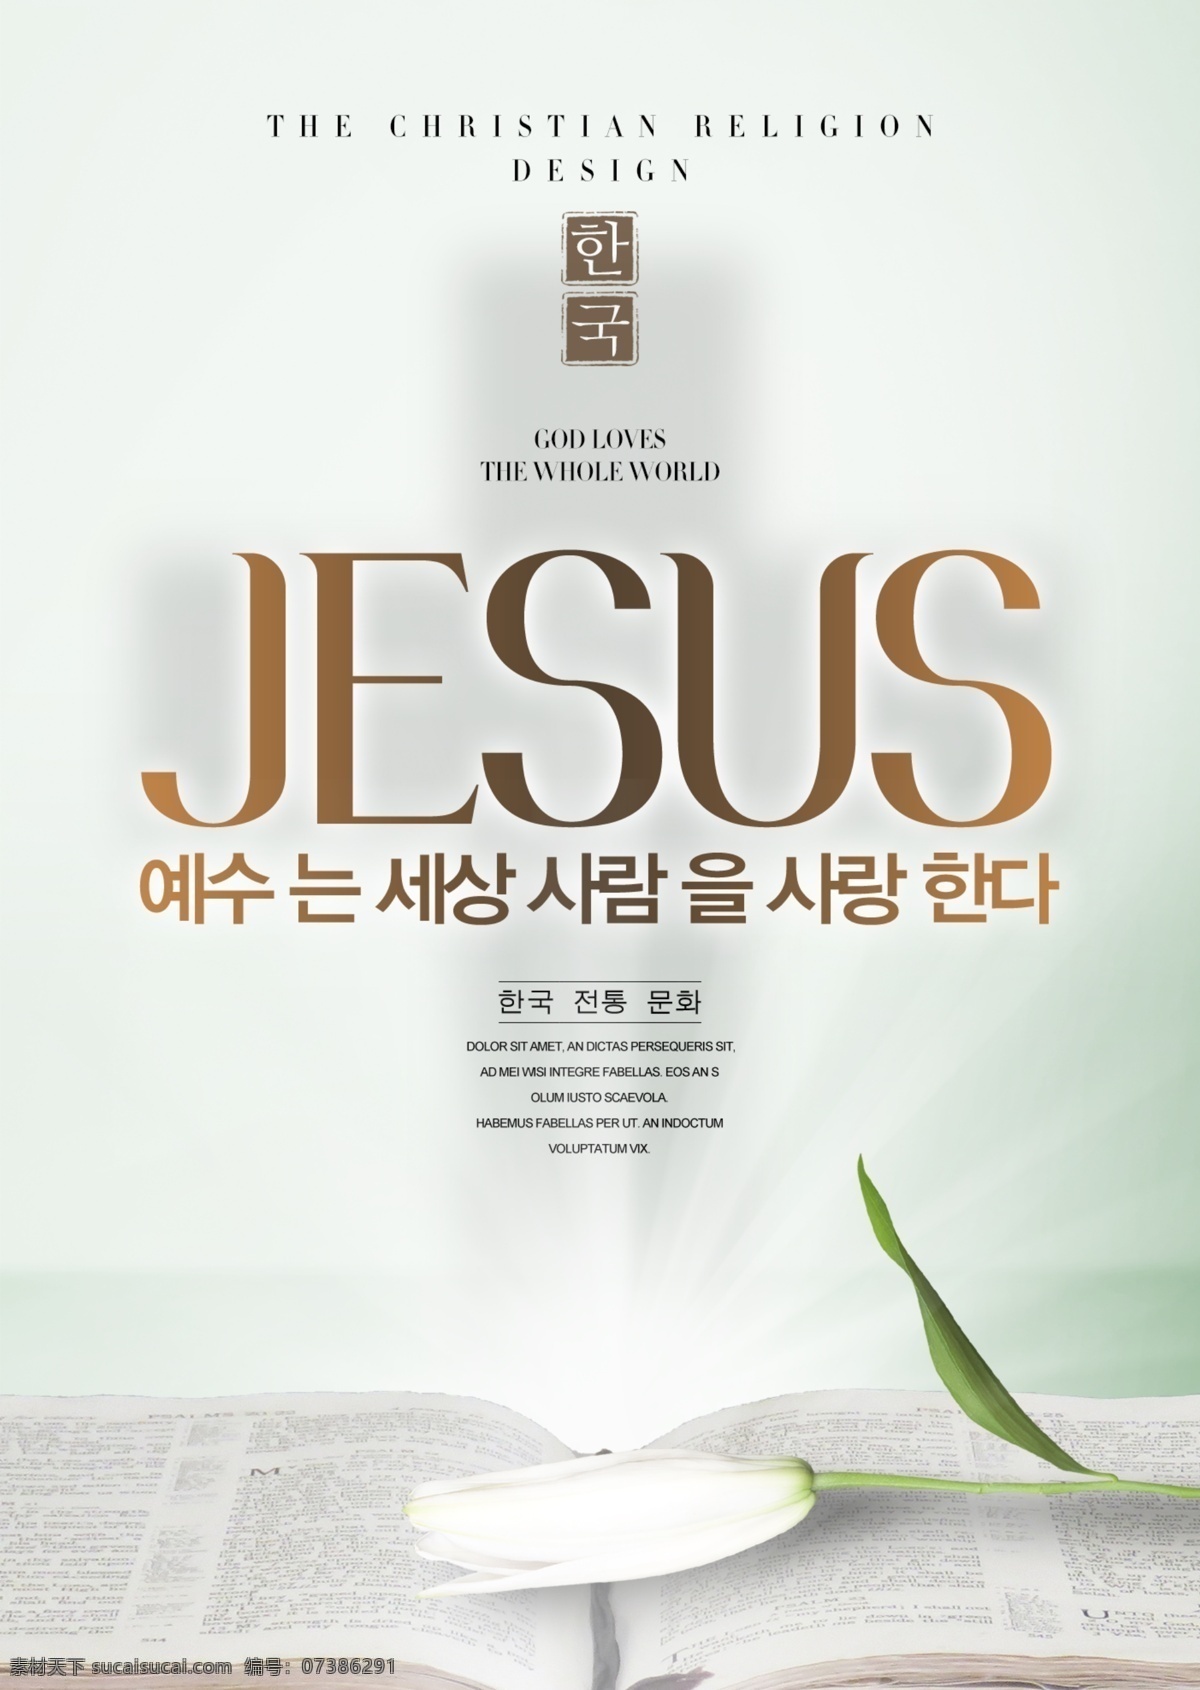 耶稣基督 海报 耶稣 基督 信仰海报 十字架海报 圣经 百合花 00信仰